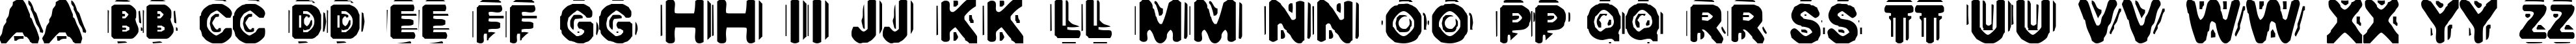 Пример написания английского алфавита шрифтом DISCOBOX